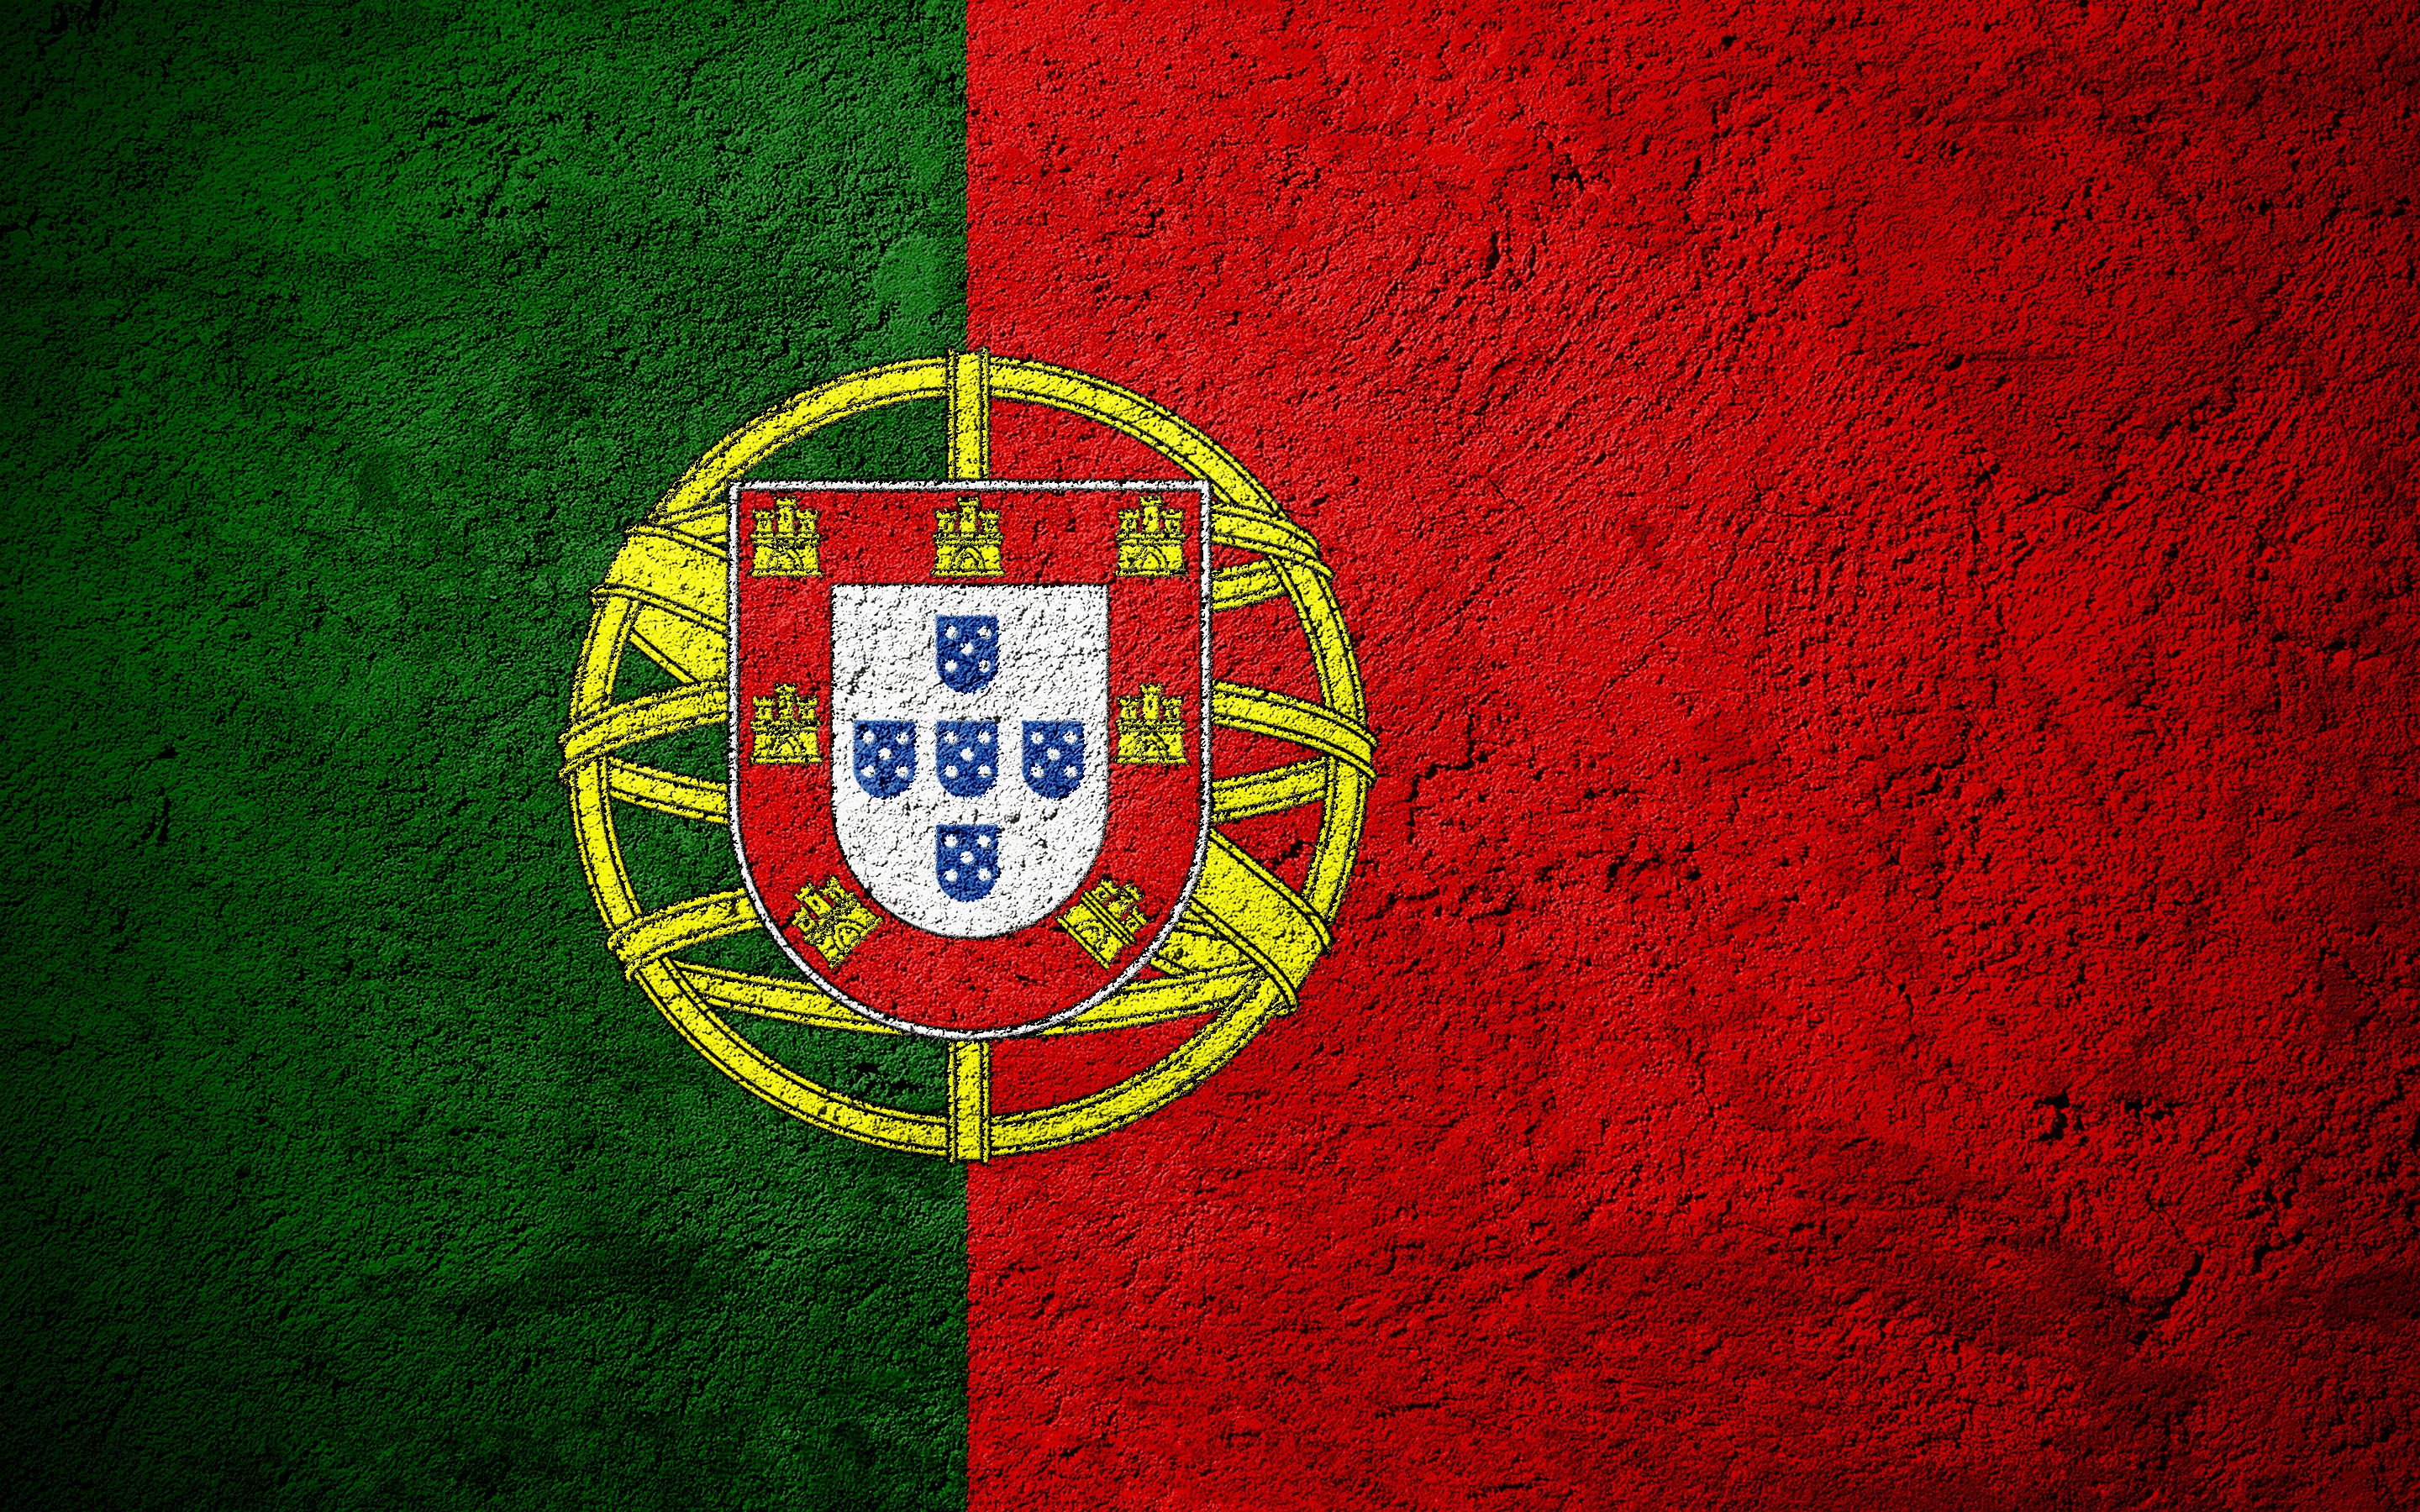 Скачать обои бесплатно Флаги, Разное, Флаг, Флаг Португалии, Португальский Флаг картинка на рабочий стол ПК